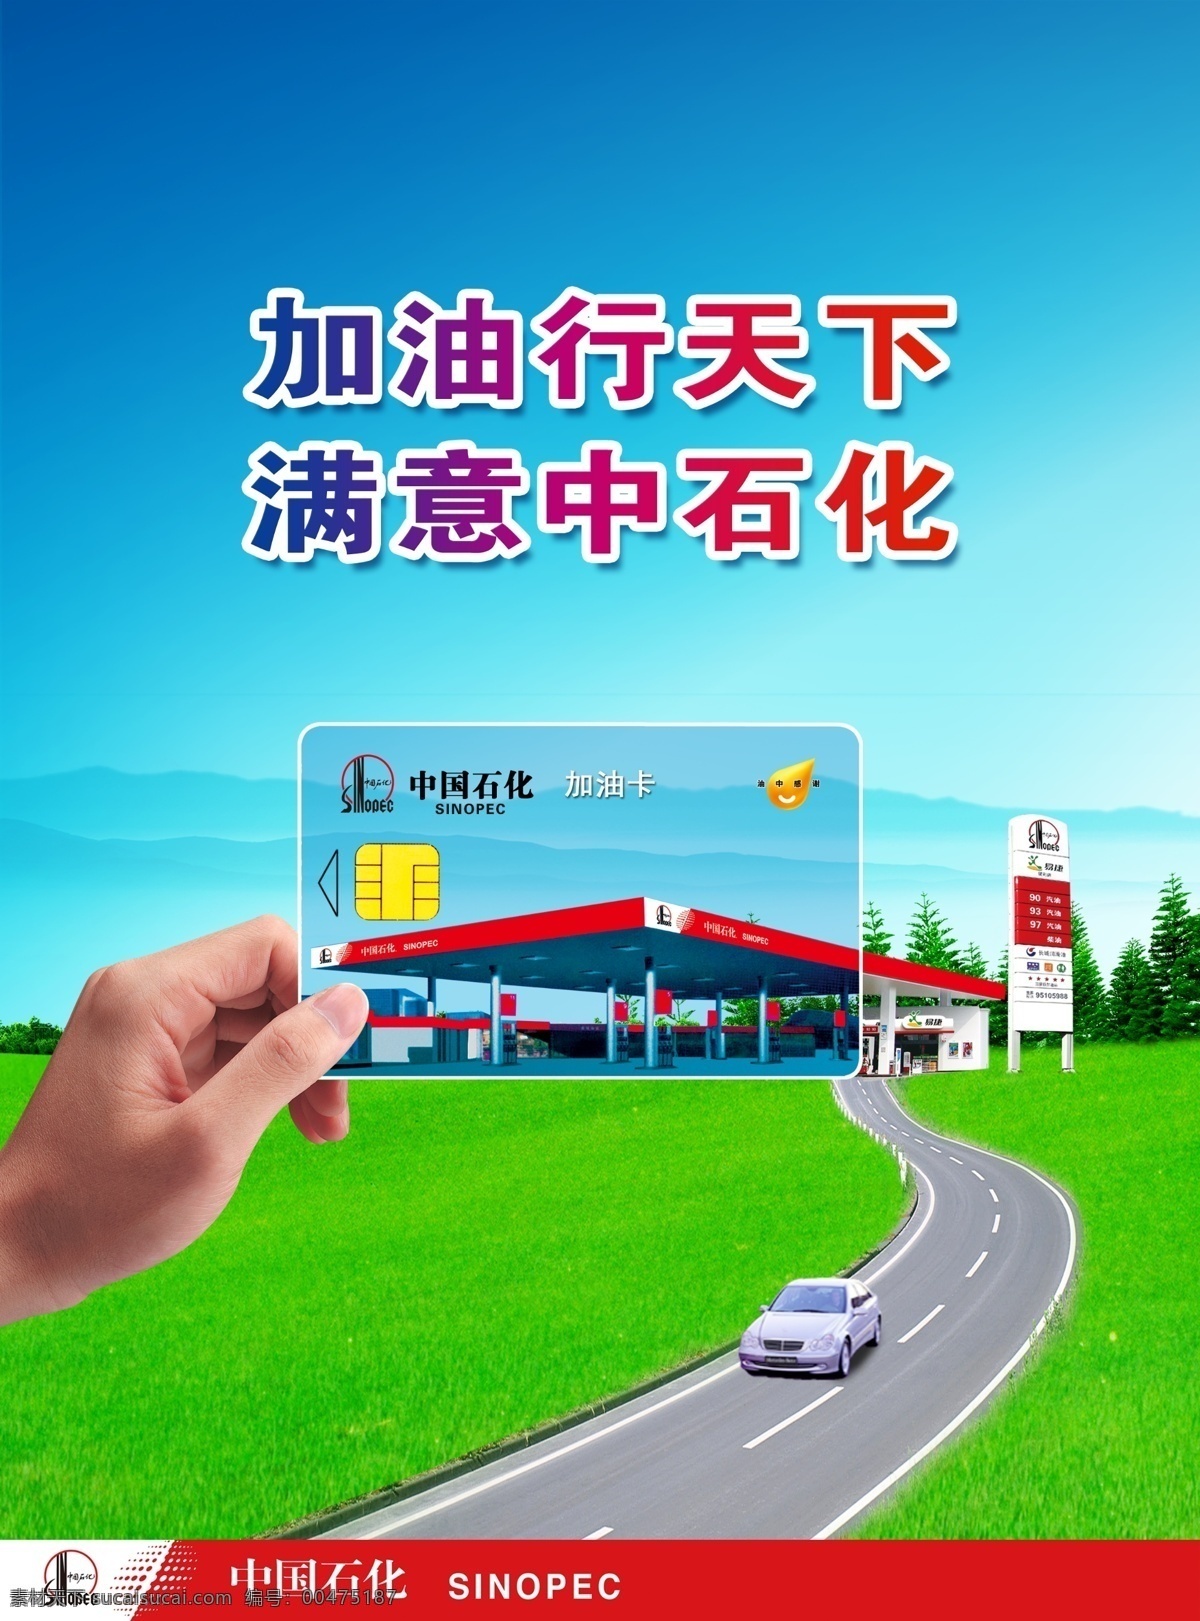 充值卡 广告设计模板 加油卡 源文件 中国石化 杂志 持卡 篇 模板下载 加油 卡 持卡篇 加油充值卡 个性定制 加油方便 其他海报设计